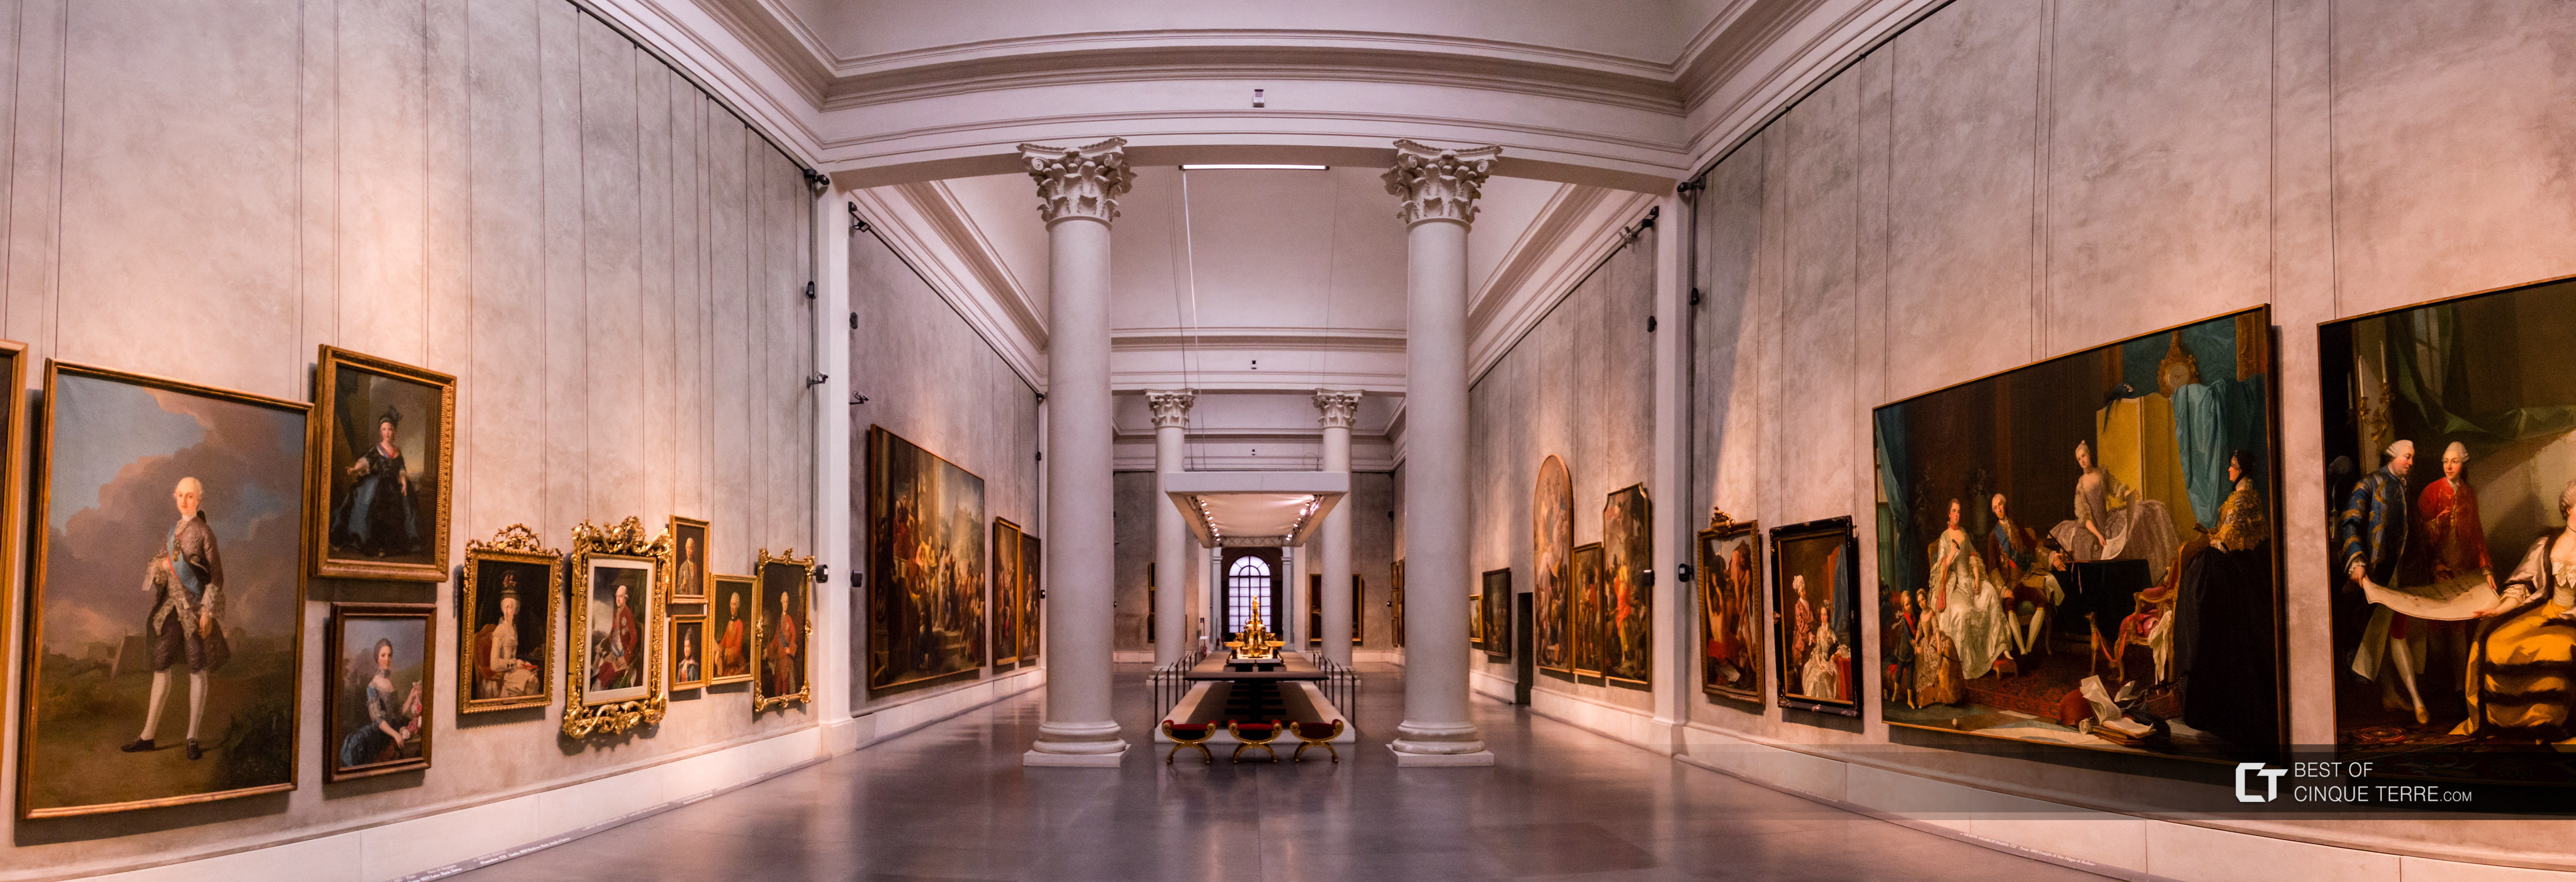 Galeria Nacional de Arte, Parma, Itália